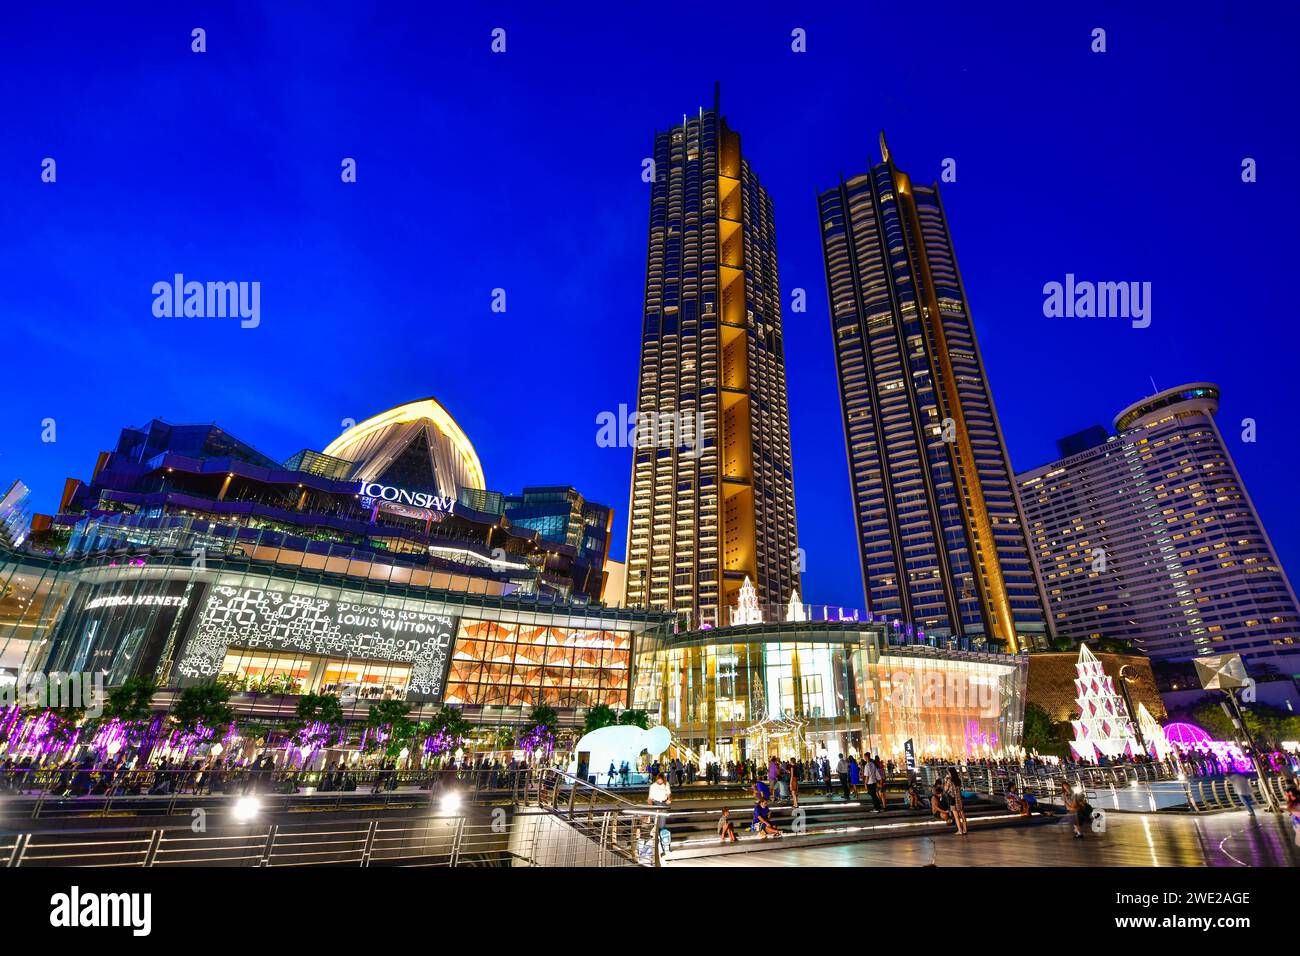 Bangkok, Thaïlande - NOV. 20,2020 :l'éclairage Iconsiam et les décorations colorées pour célébrer le nouvel an le long de la rive Chao Phraya Banque D'Images